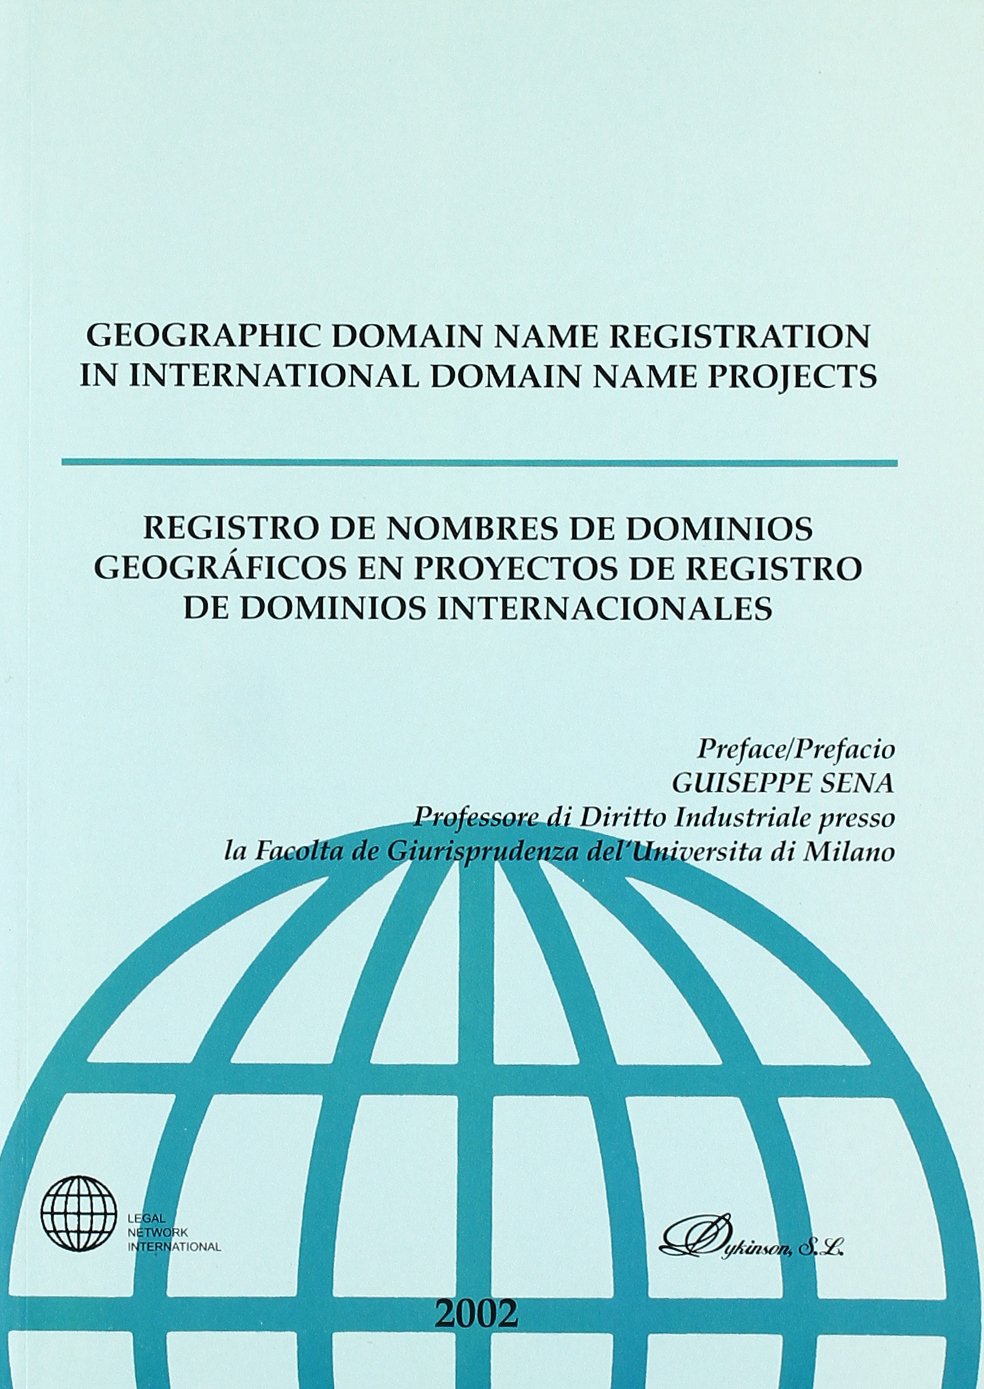 Registro de nombres de dominios geográficos en proyectos de registro de dominios internacionales